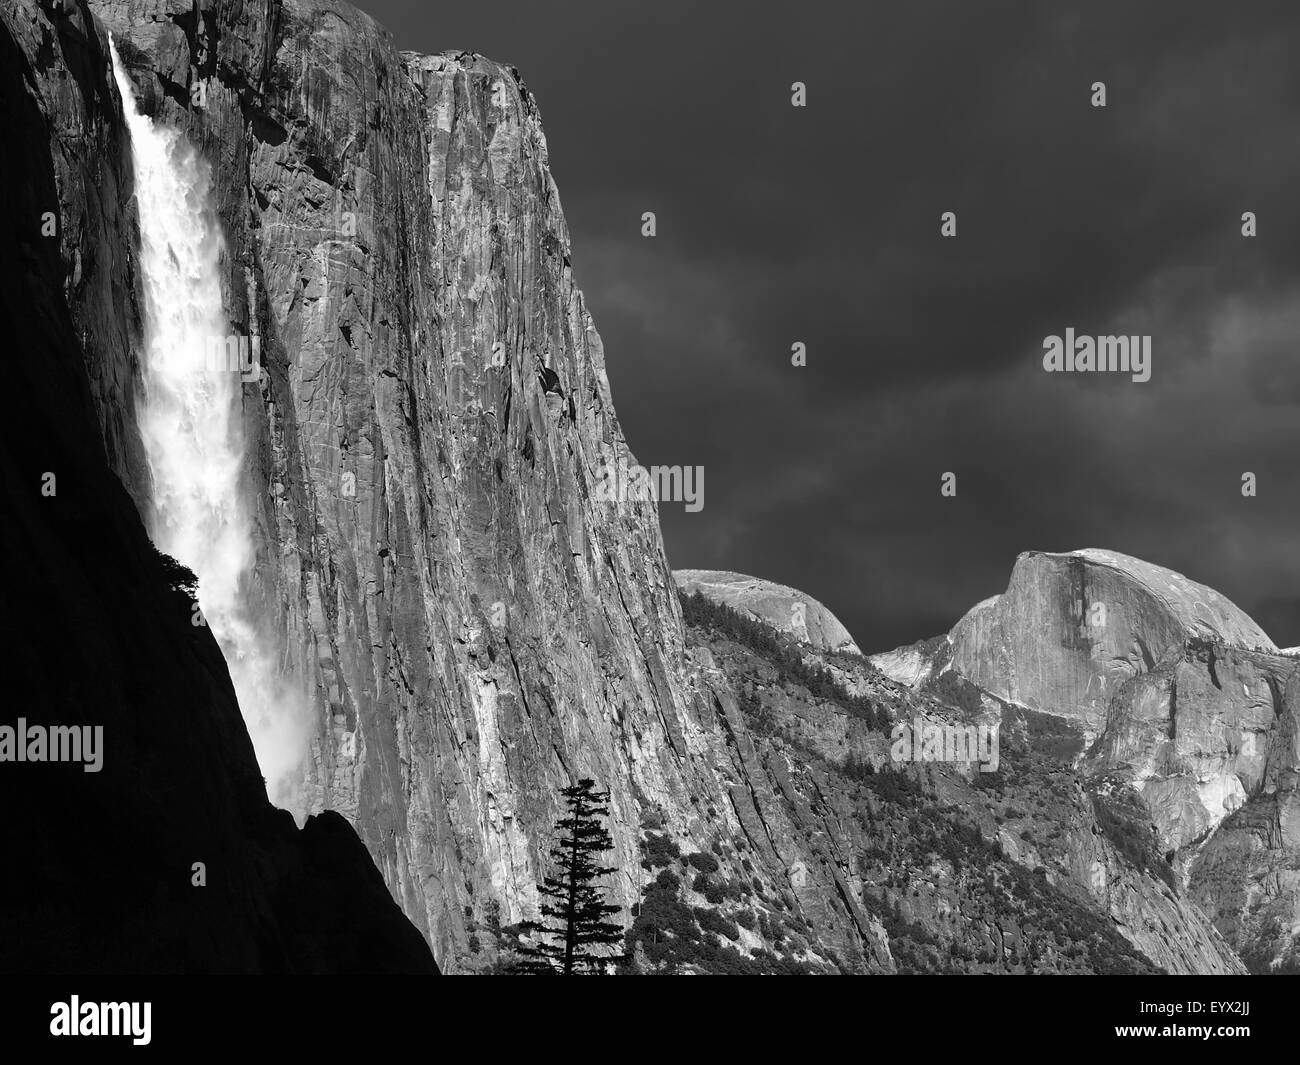 Yosemite Falls and Half Dome in black and white. Stock Photo